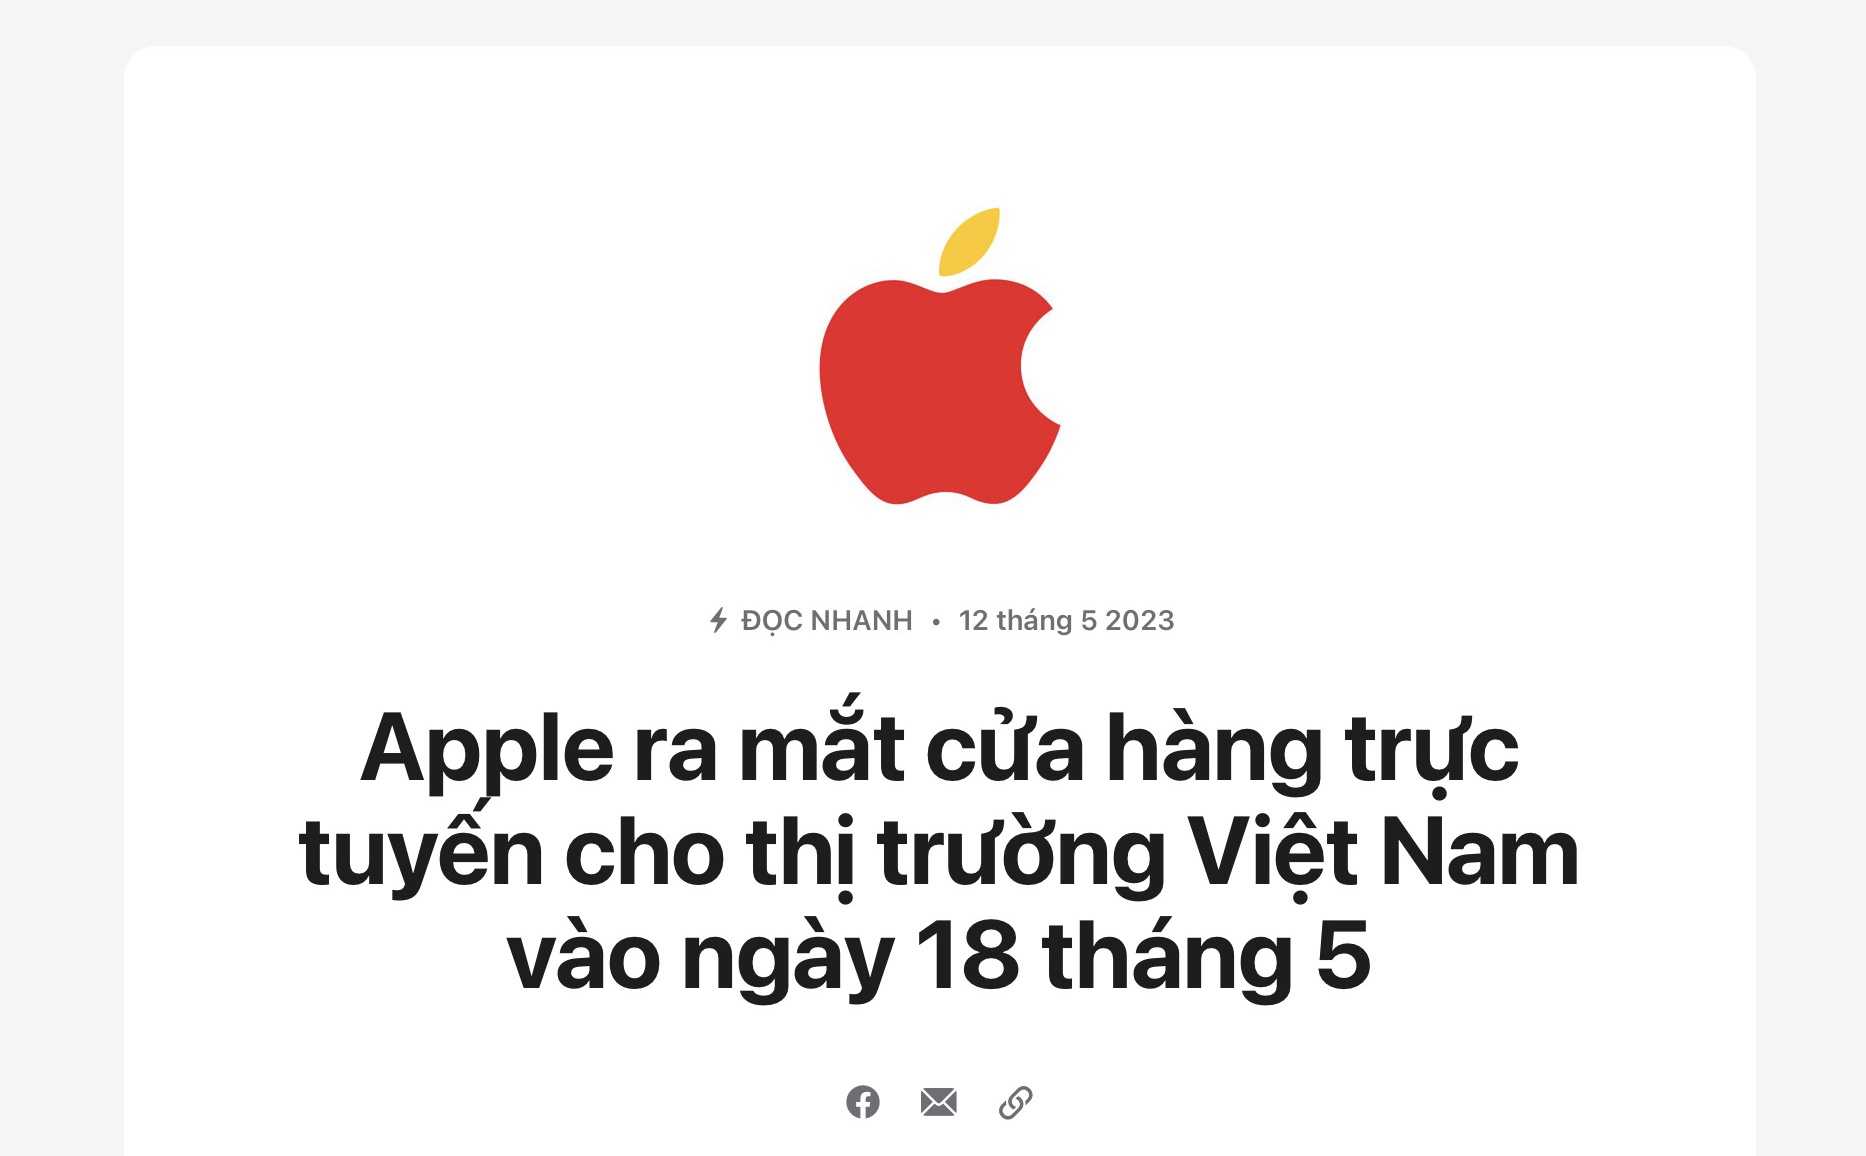 Apple Store sẽ sớm có mặt tại Việt Nam? - Ảnh 1.